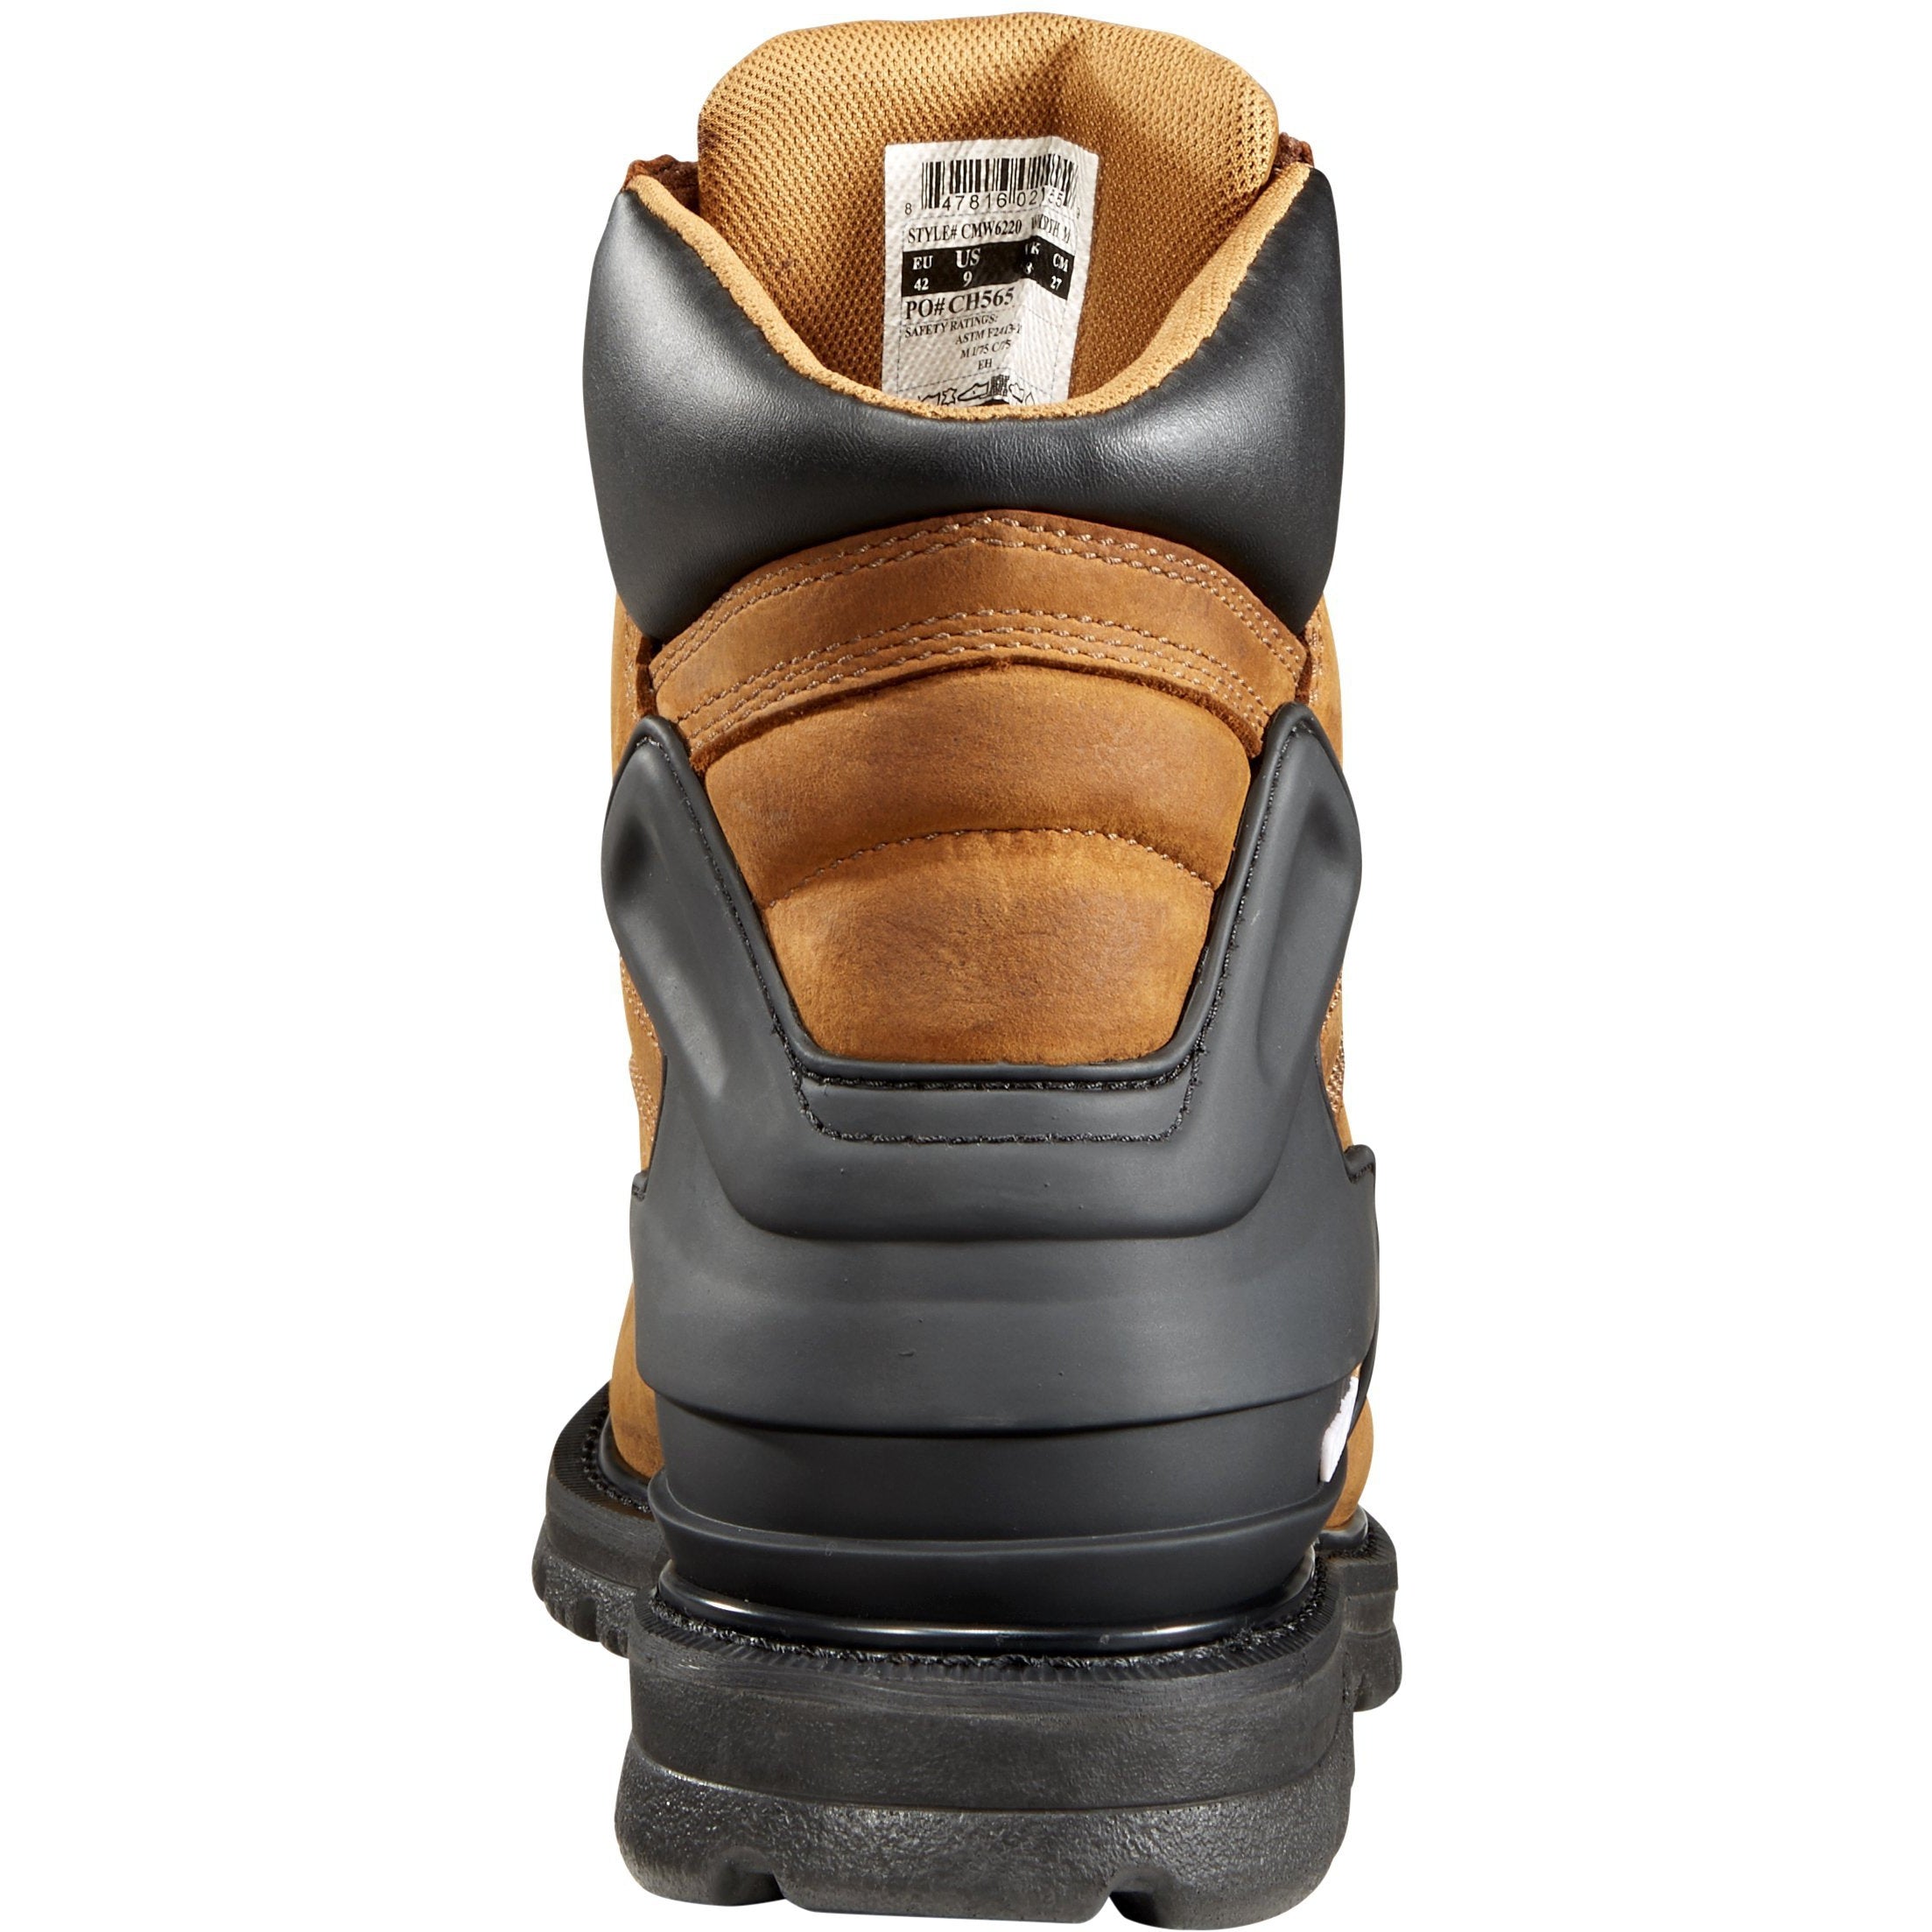 Carhartt Men's 6" Steel Toe Waterproof Work Boot - Brown - CMW6220  - Overlook Boots